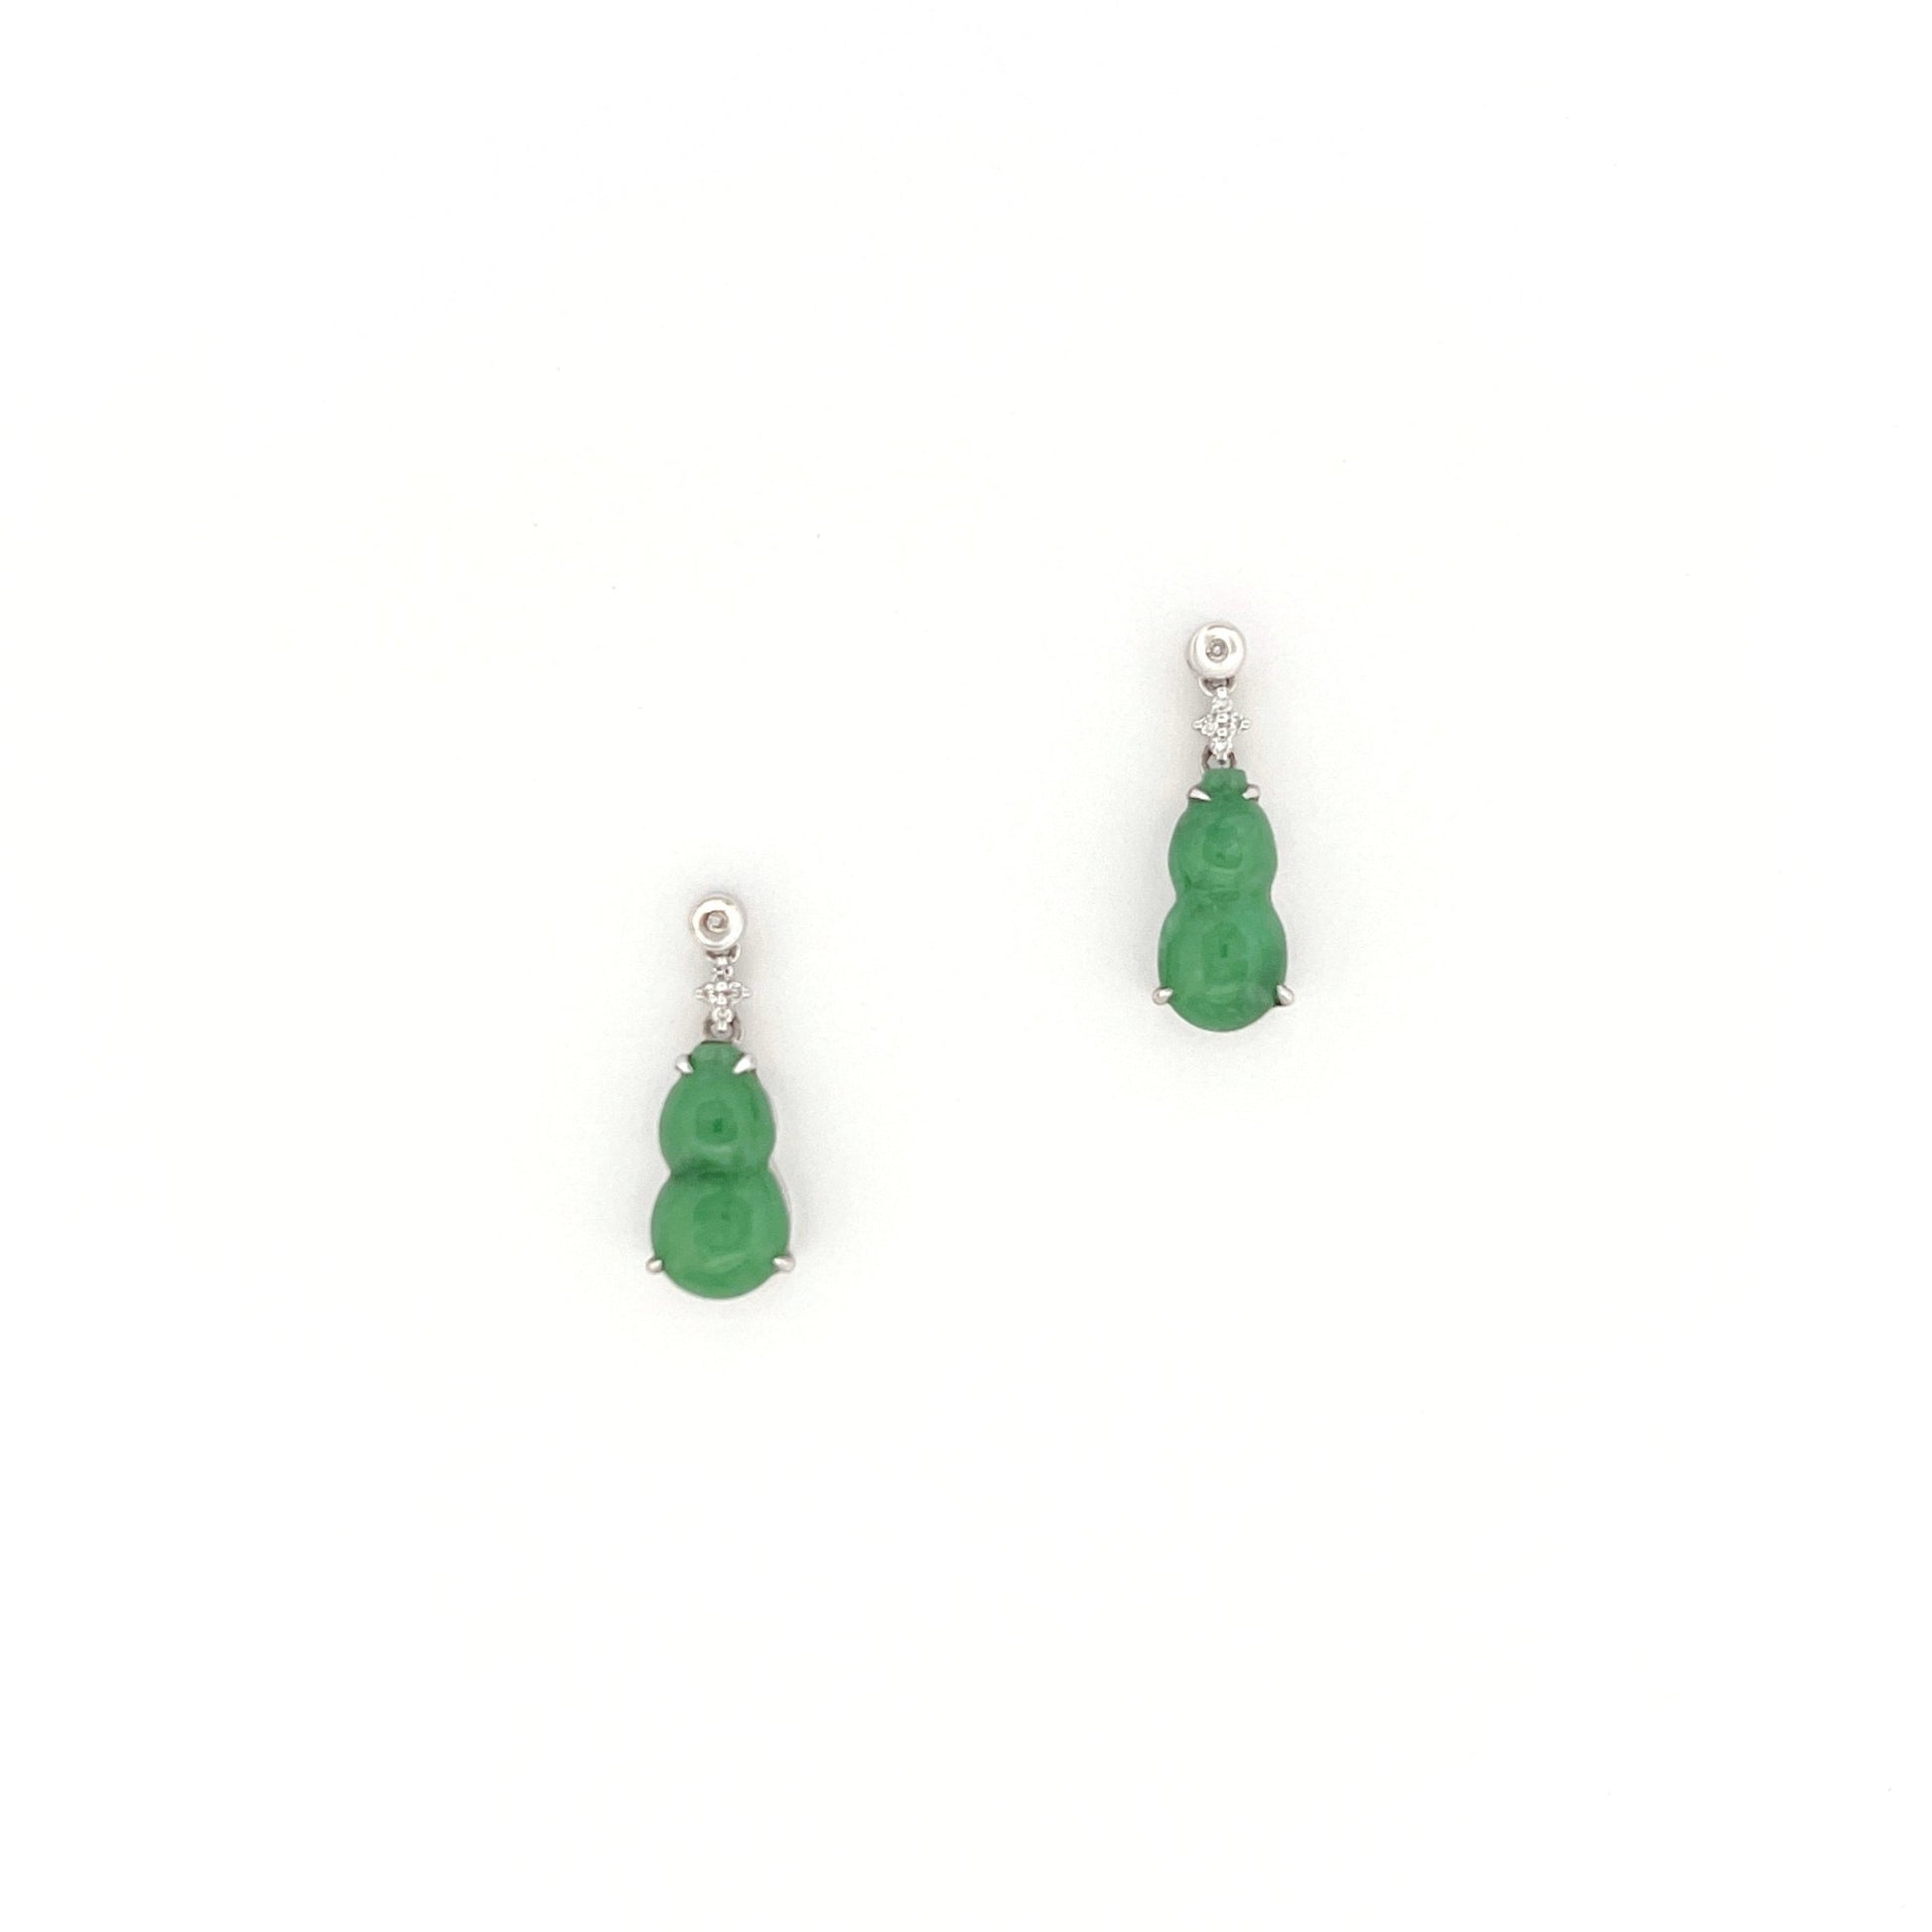 耳環 - 綠色葫蘆雕刻天然翡翠配鑽石拼花18K白色金耳環 - 雅玉珠寶